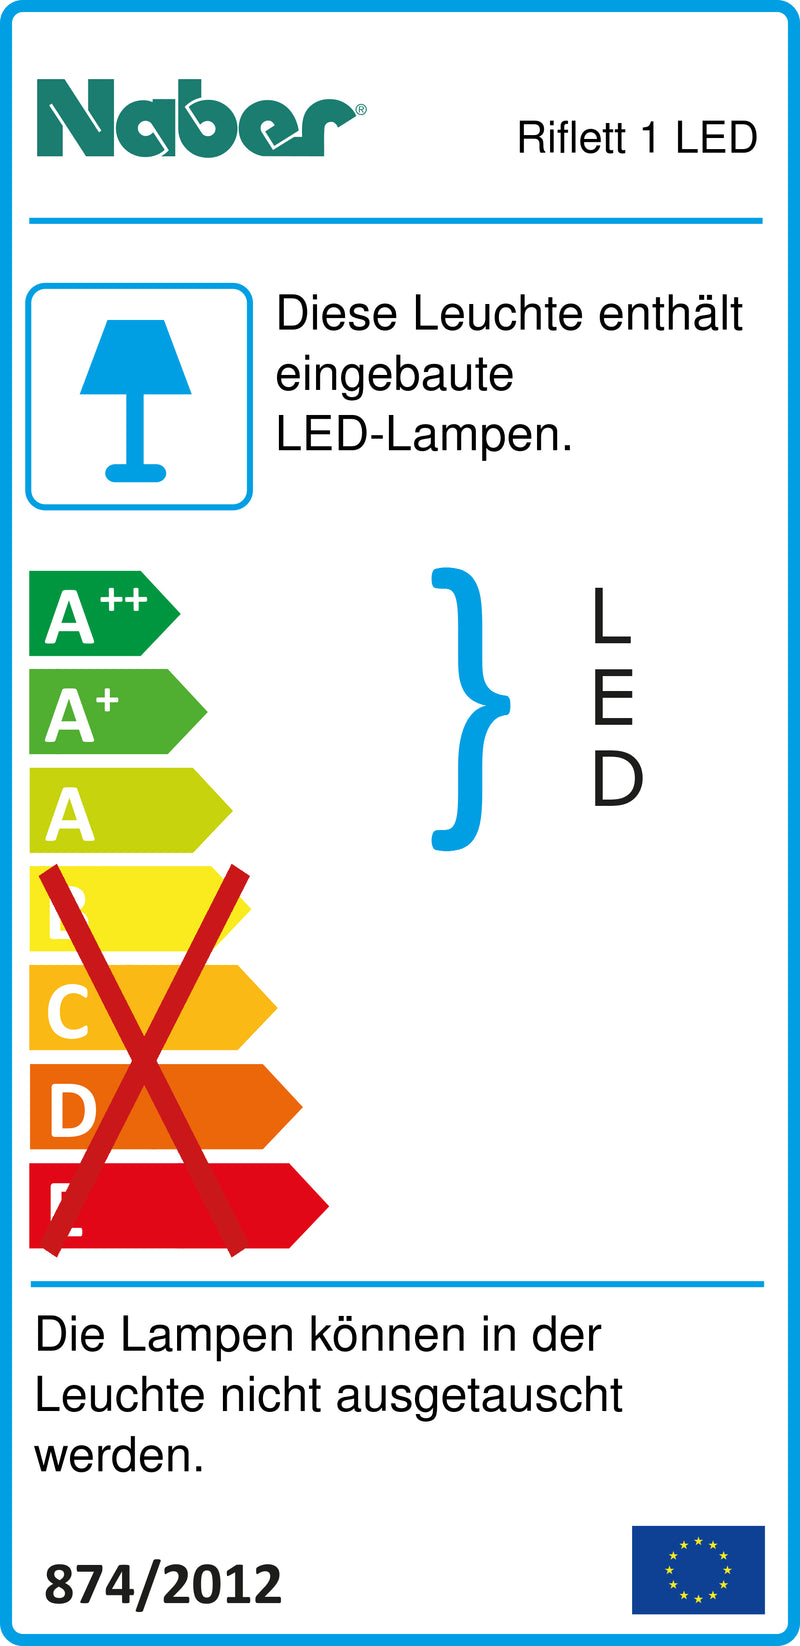 E-Label zu Zeichnung zu Riflett 1 LED als Variante Einzelleuchte o. S., 3000 K warmweiß von Naber GmbH in der Kategorie Lichttechnik in Österreich auf conceptshop.at